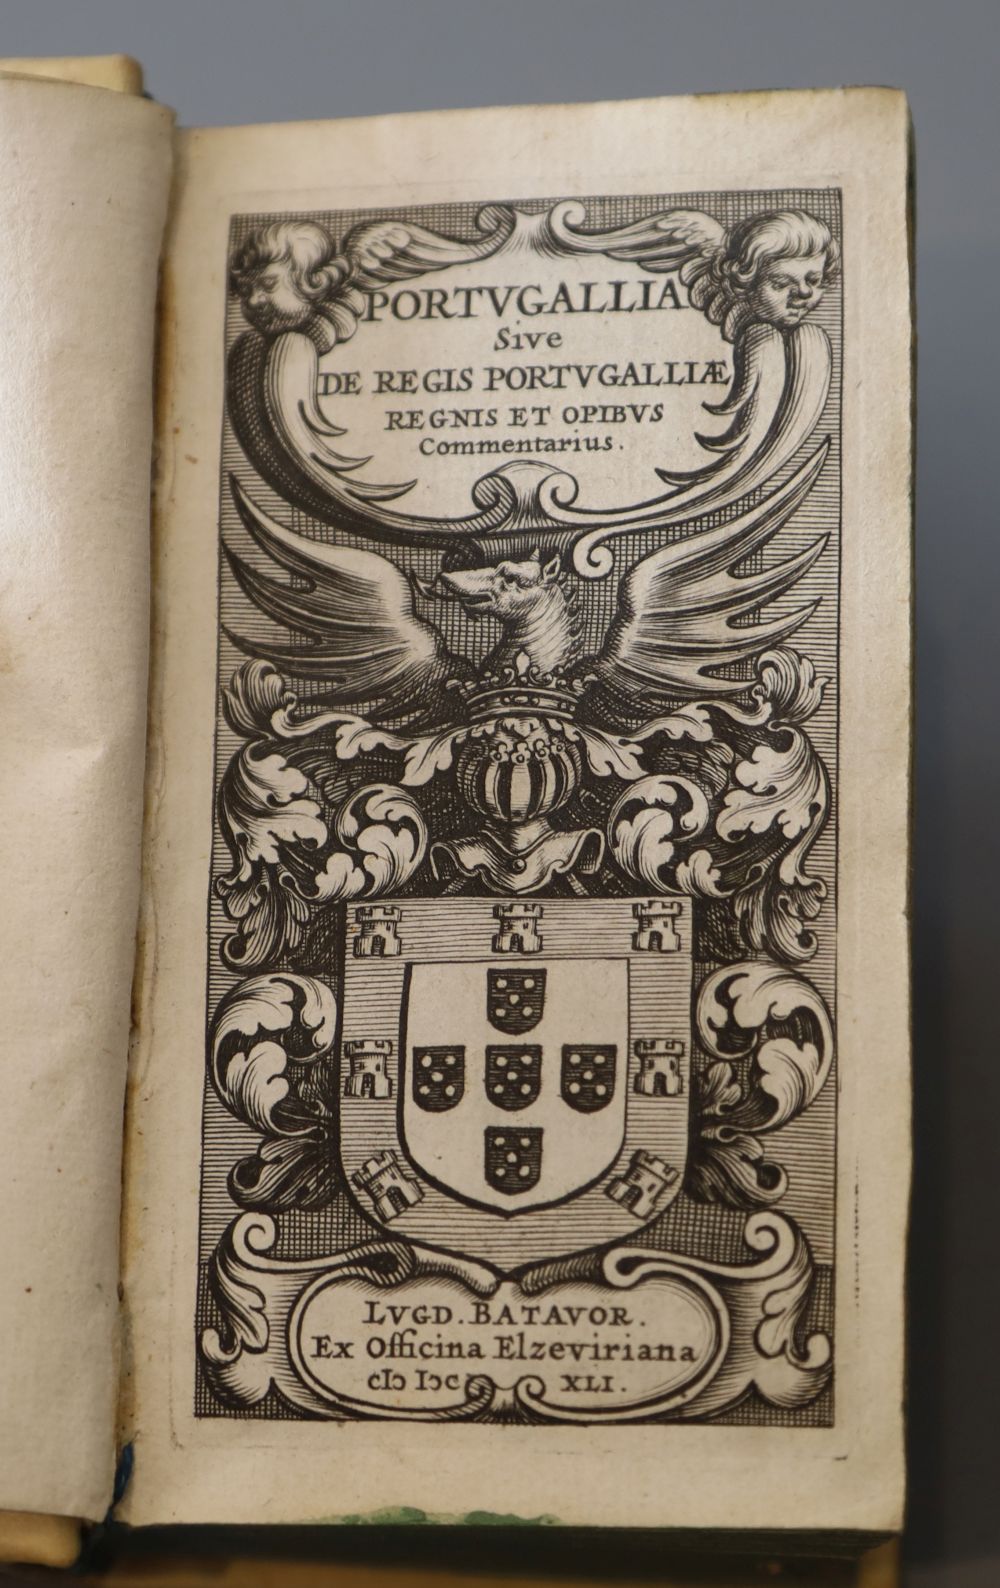 [De Laet, Joannes] - Portugallia sive Regis, vellum, 16mo, Elzevir, Leiden Batavor, 1641